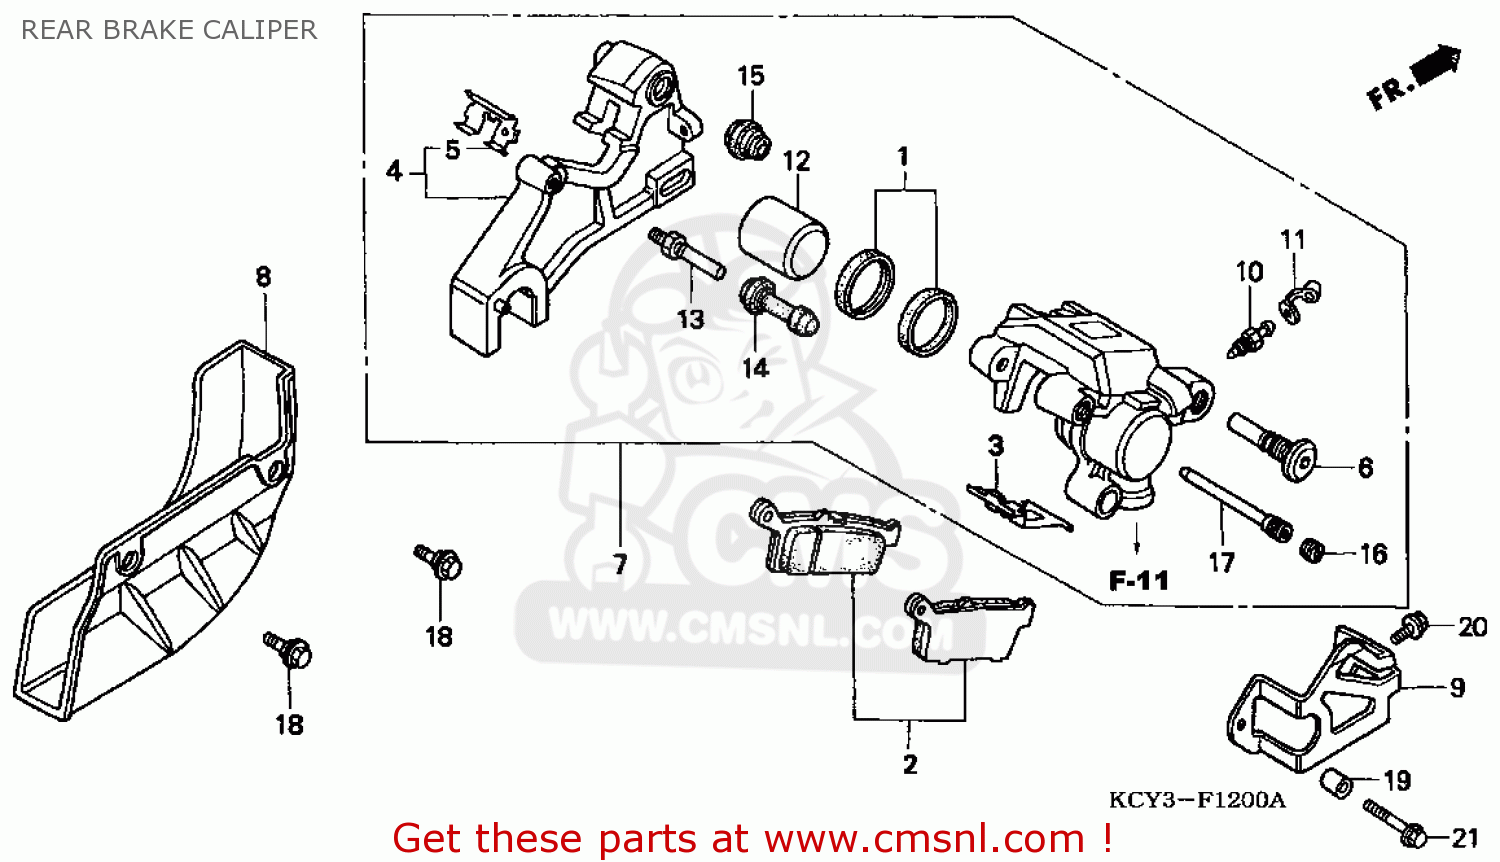 Honda xr400 parts list #2